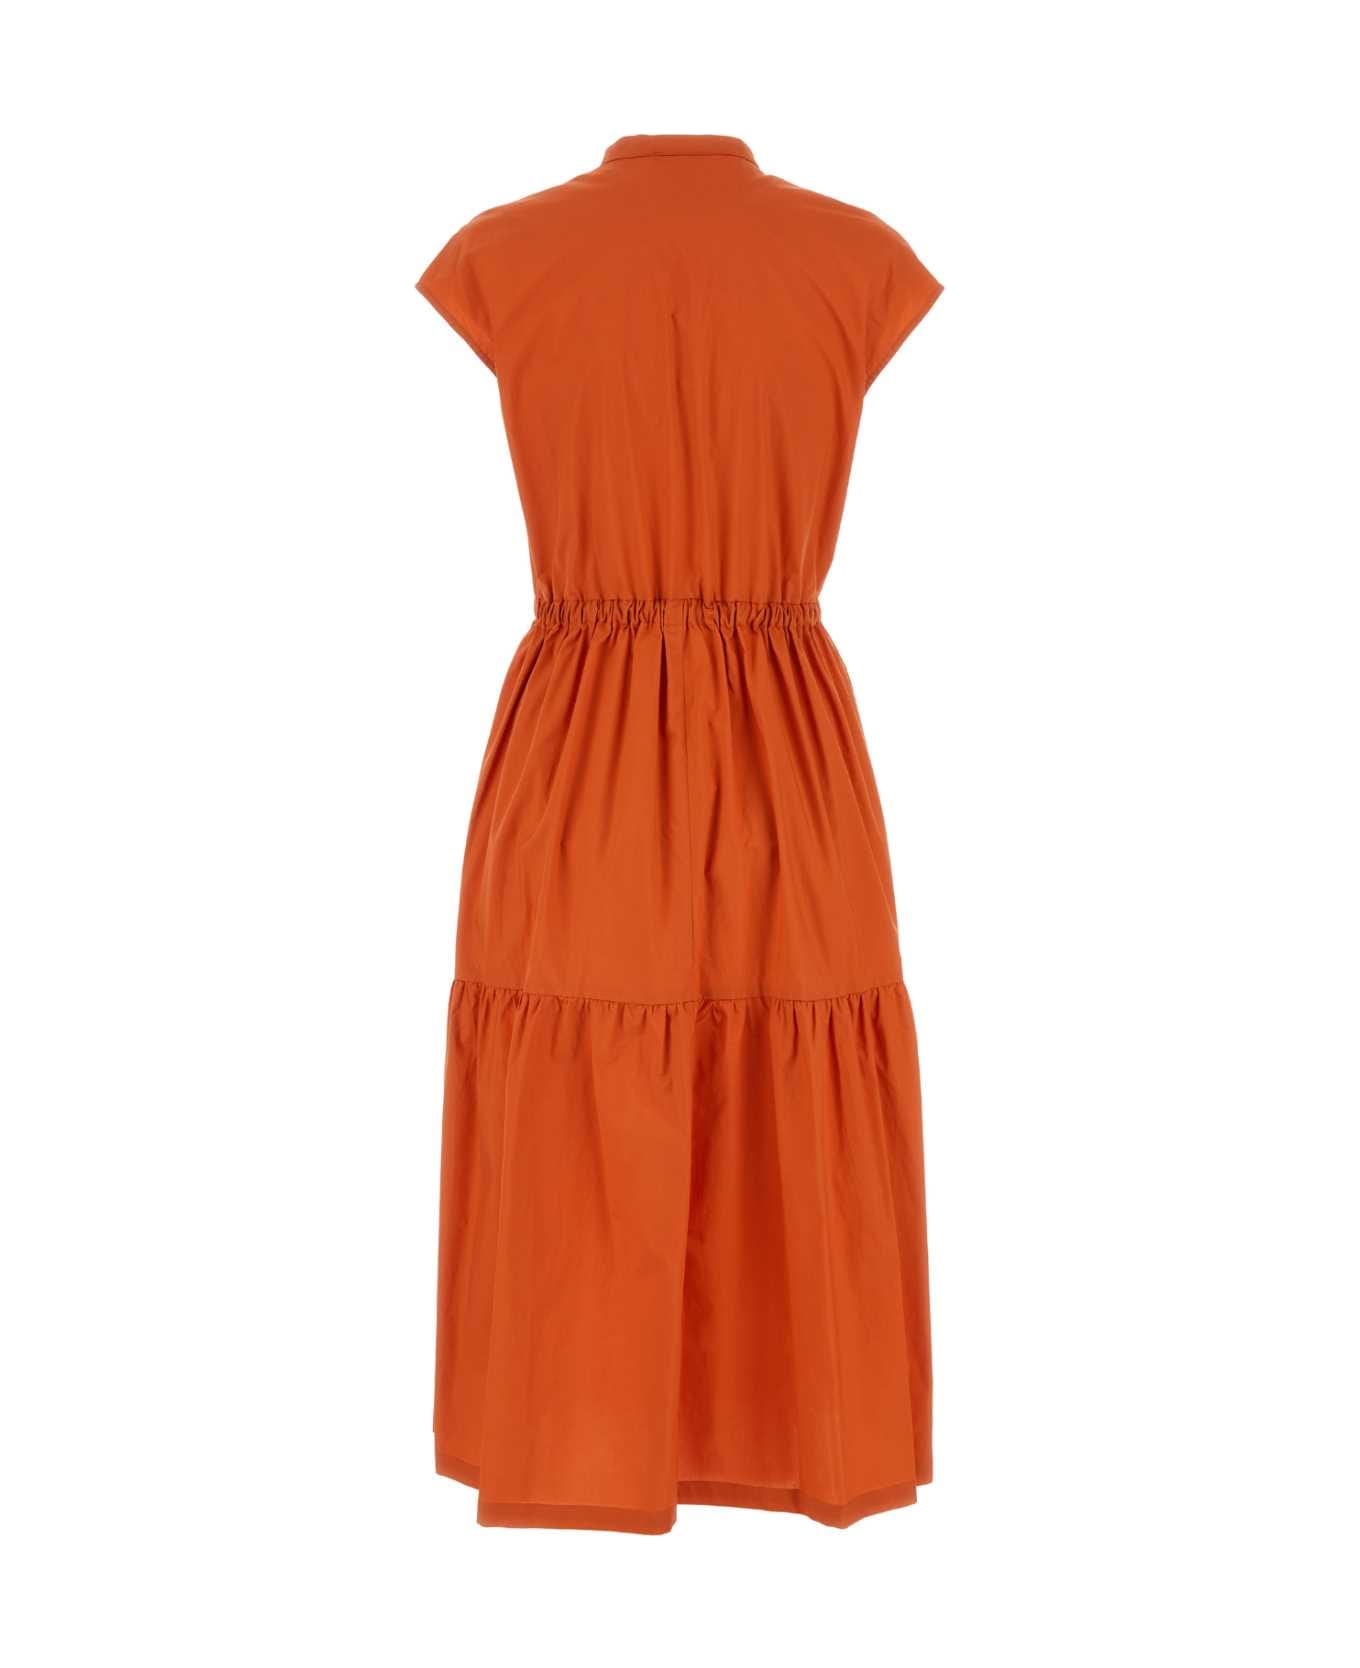 Woolrich Orange Cotton Dress - KOI